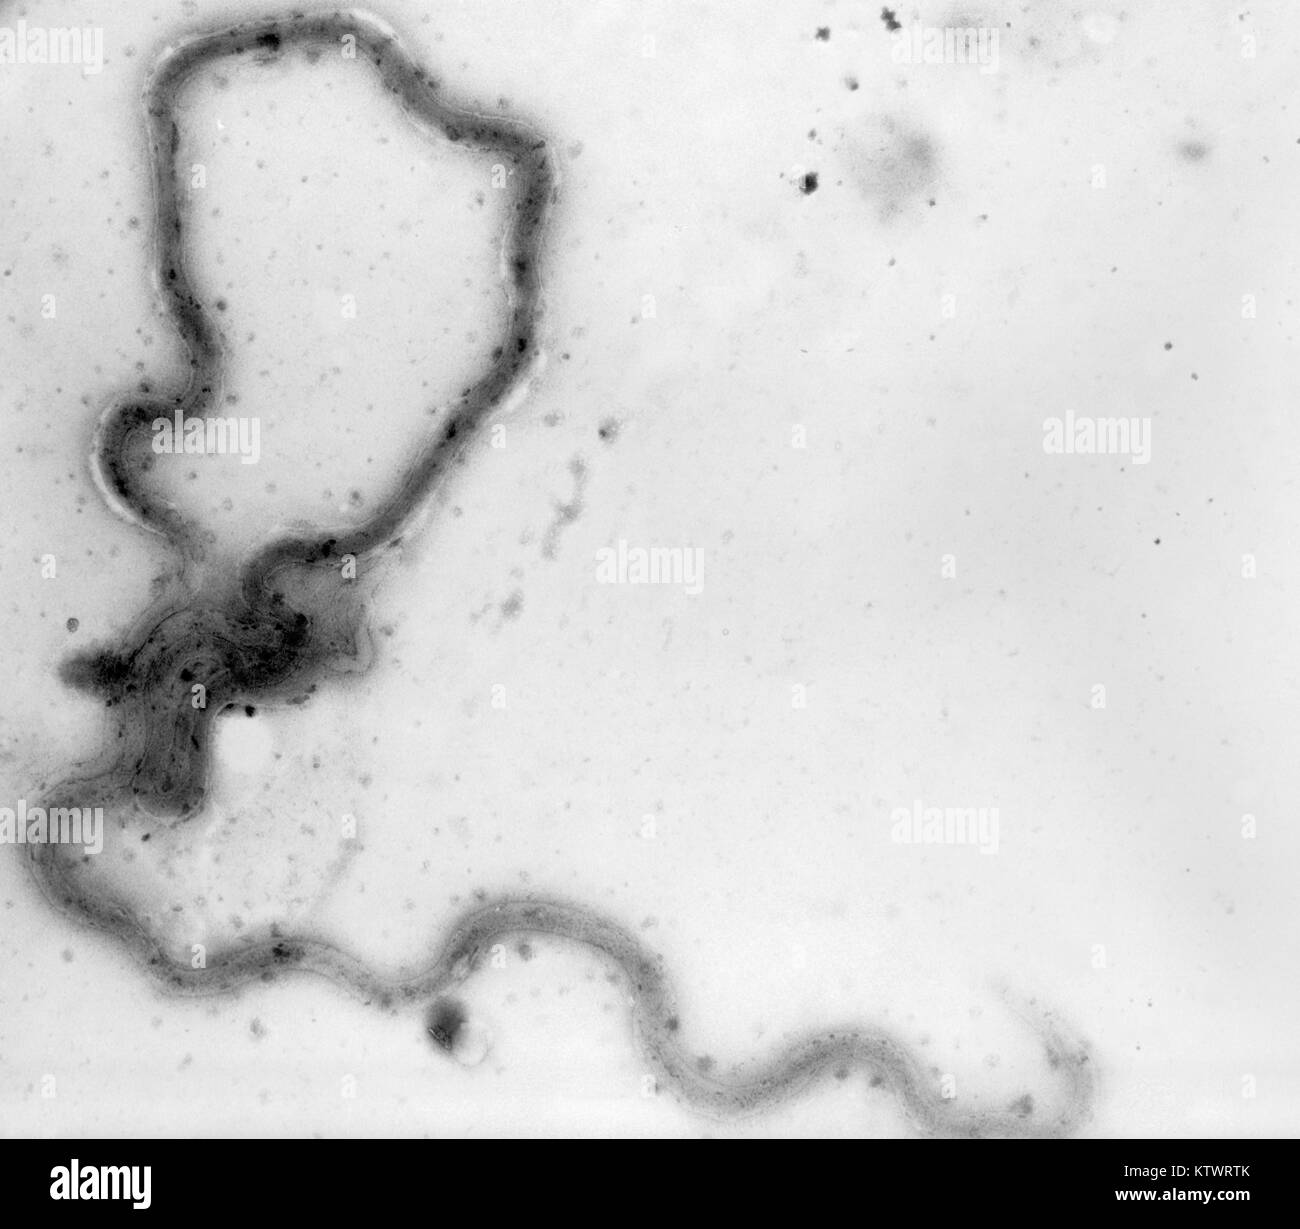 Eine photomicrograph eines Treponema pallidum Bakterium. Eine photomicrograph einen ganzen Berg von Virulenten T. pallidum, 1970. Dieser mikroskopische Bakterium (spirochäte) ist ein Wurm - wie spiralförmige Organismus, die kräftig wackelt, wenn unter dem Mikroskop betrachtet. Mit freundlicher CDC, VDRL-Abteilung. Stockfoto